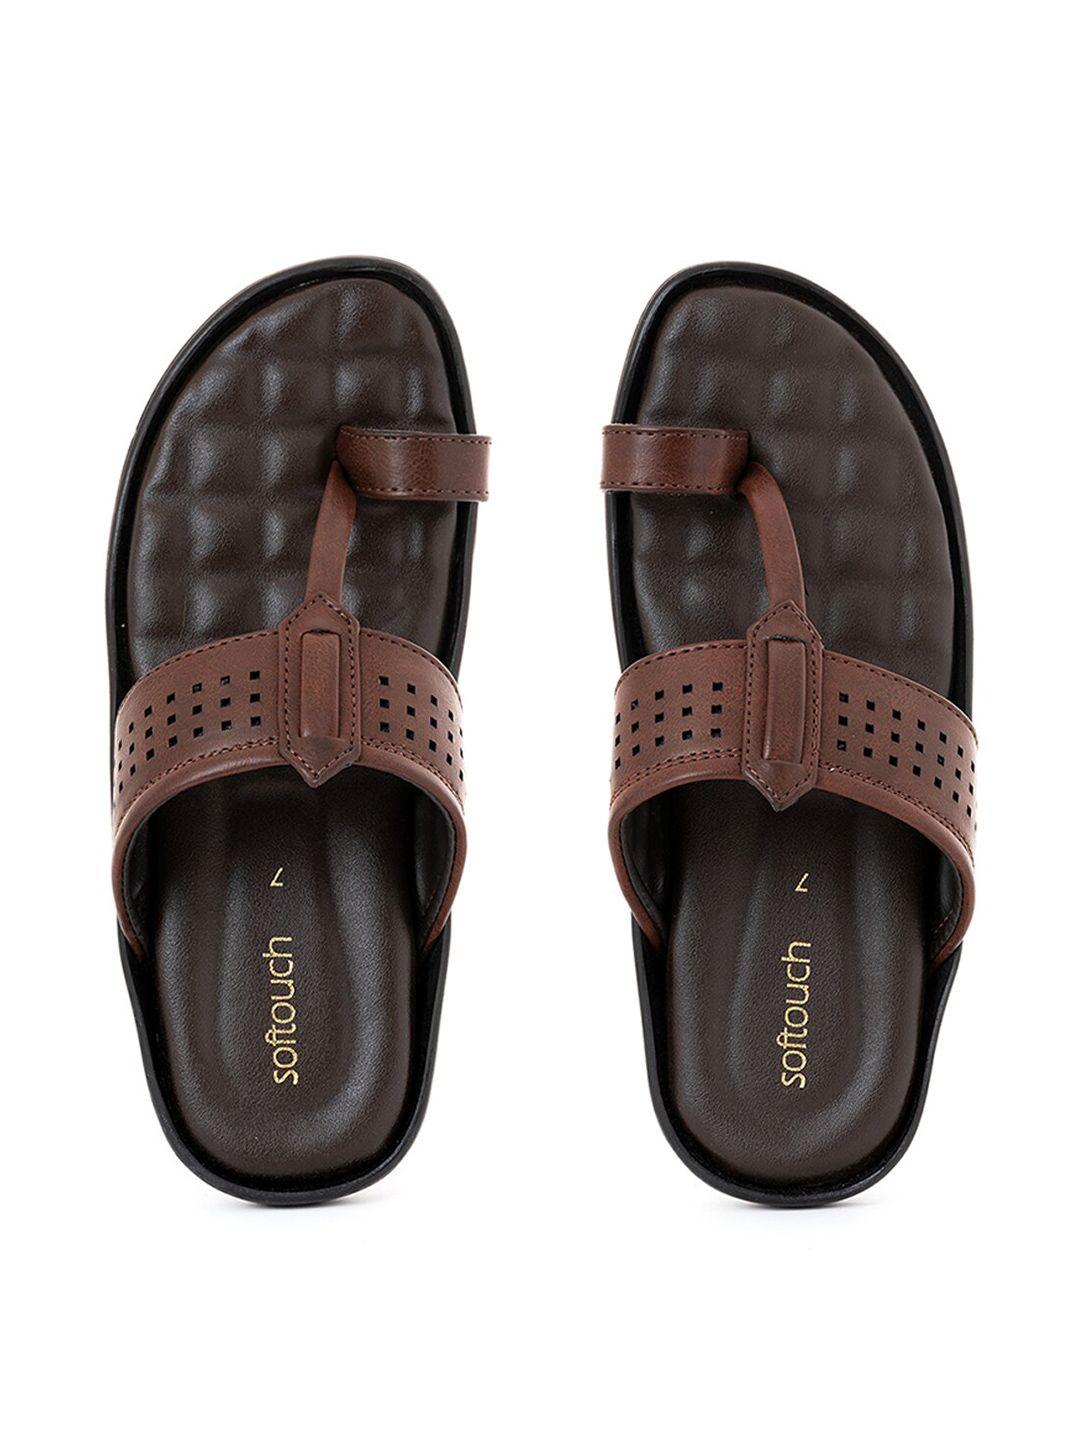 khadims men brown ethnic comfort sandals